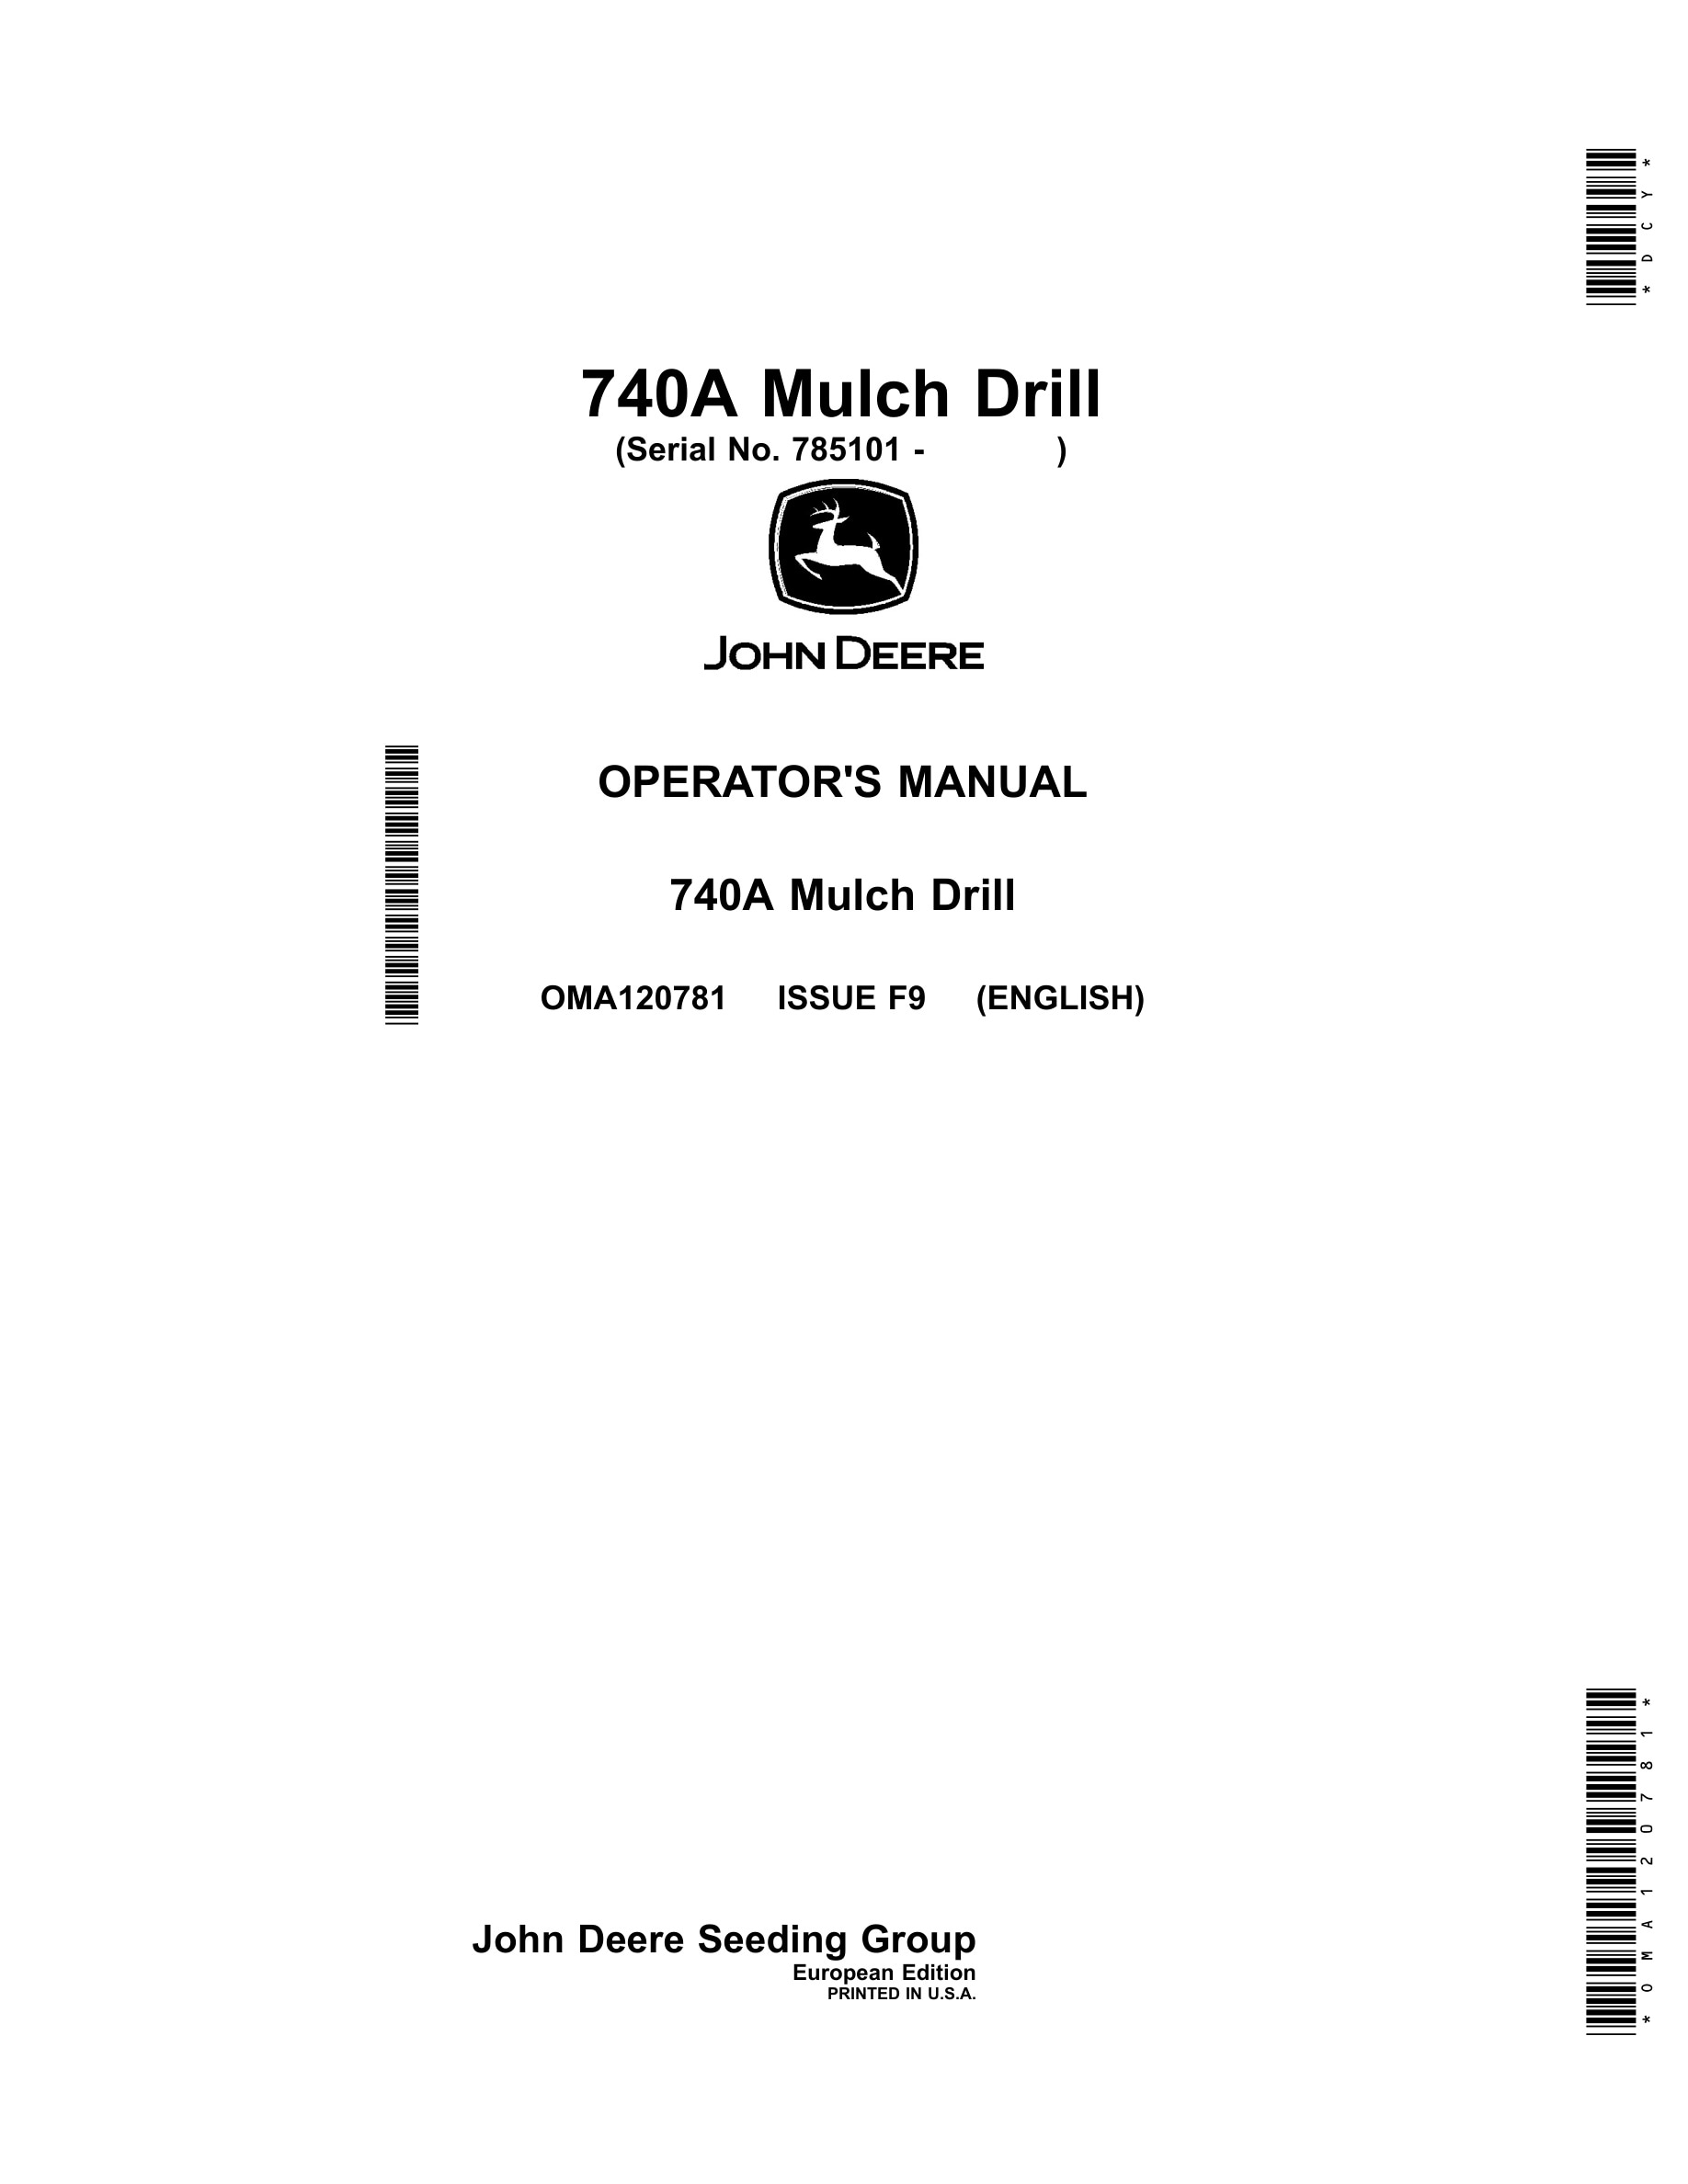 John Deere 740A Mulch Drill Operator Manual OMA120781-1